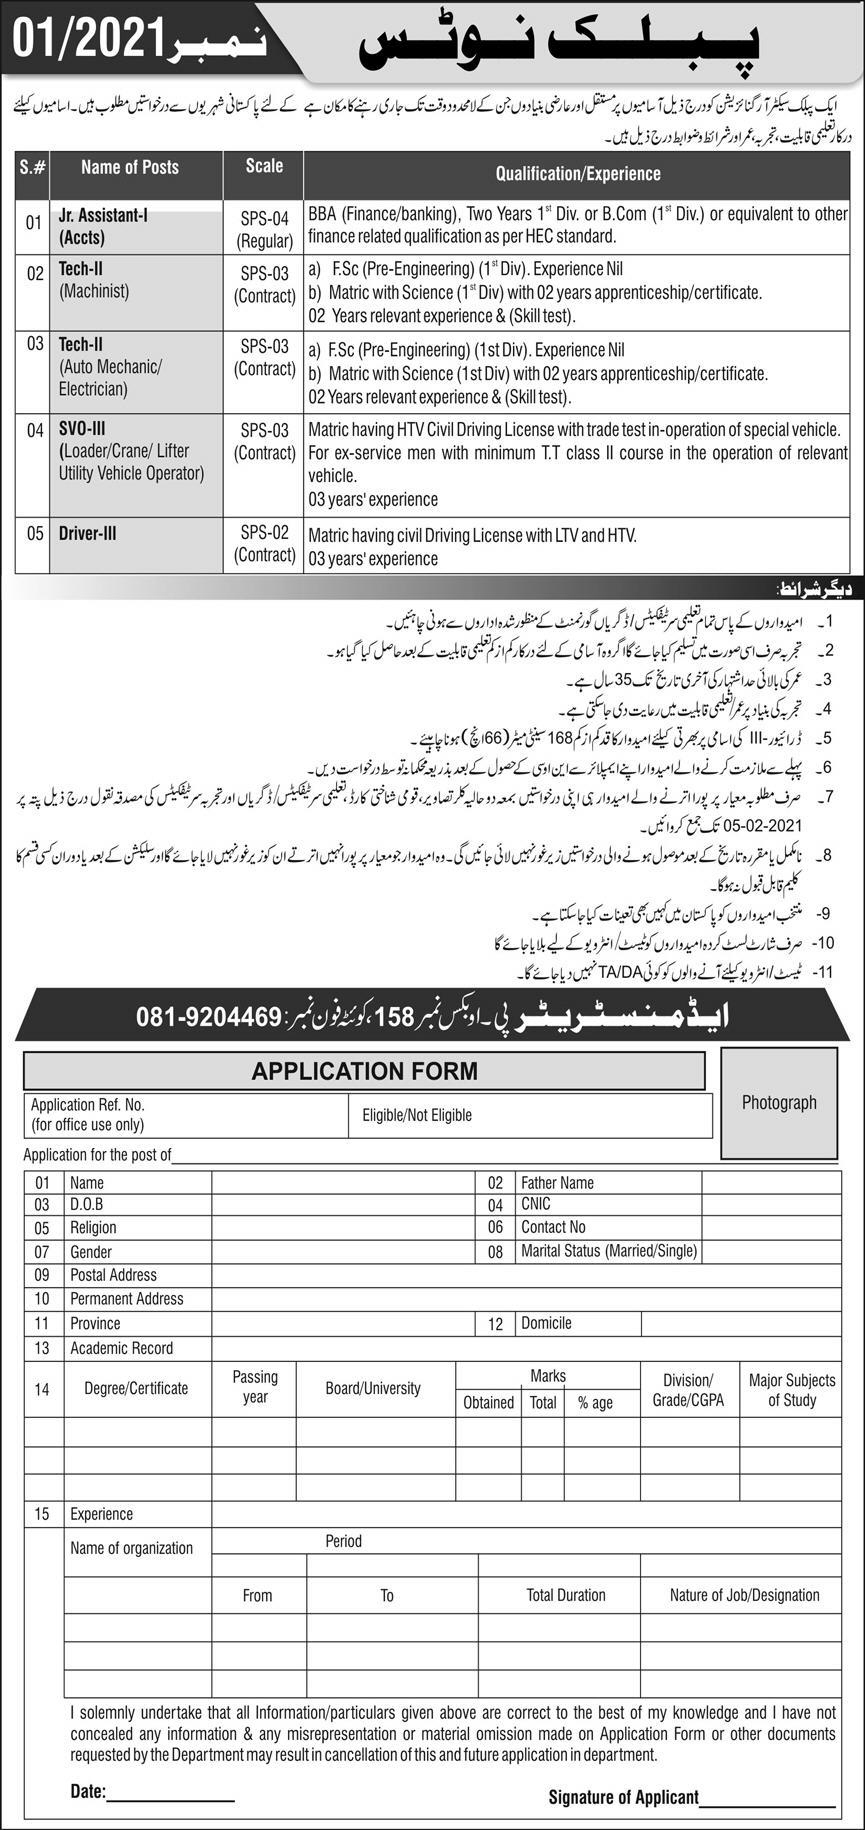 PO Box 158 Quetta Jobs 2021